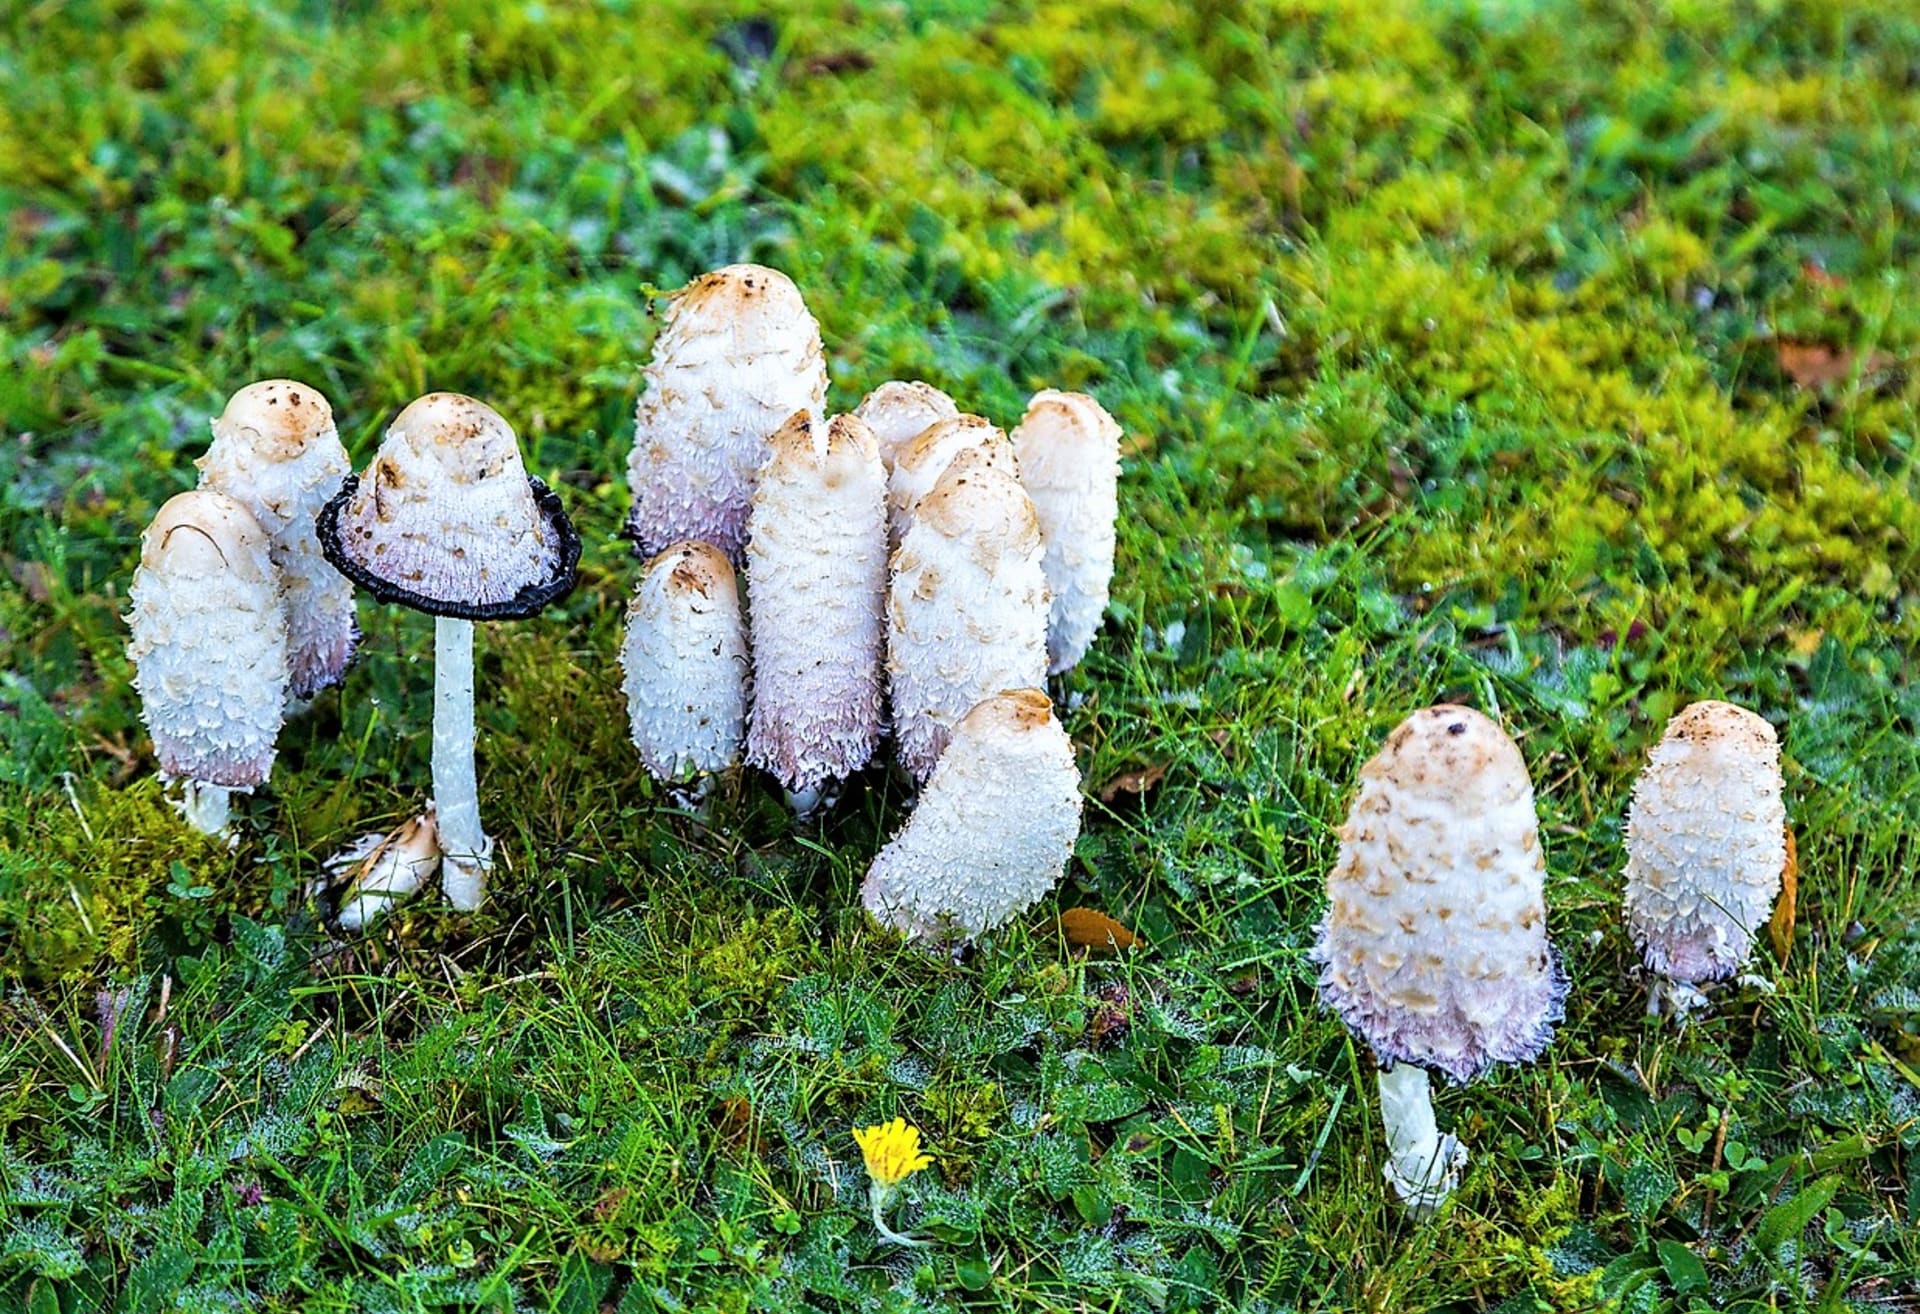 Hnojník obecný patří ke stále oblíbenějším léčivým houbám, protože prospívá zdraví celkově, včetně psychické pohody